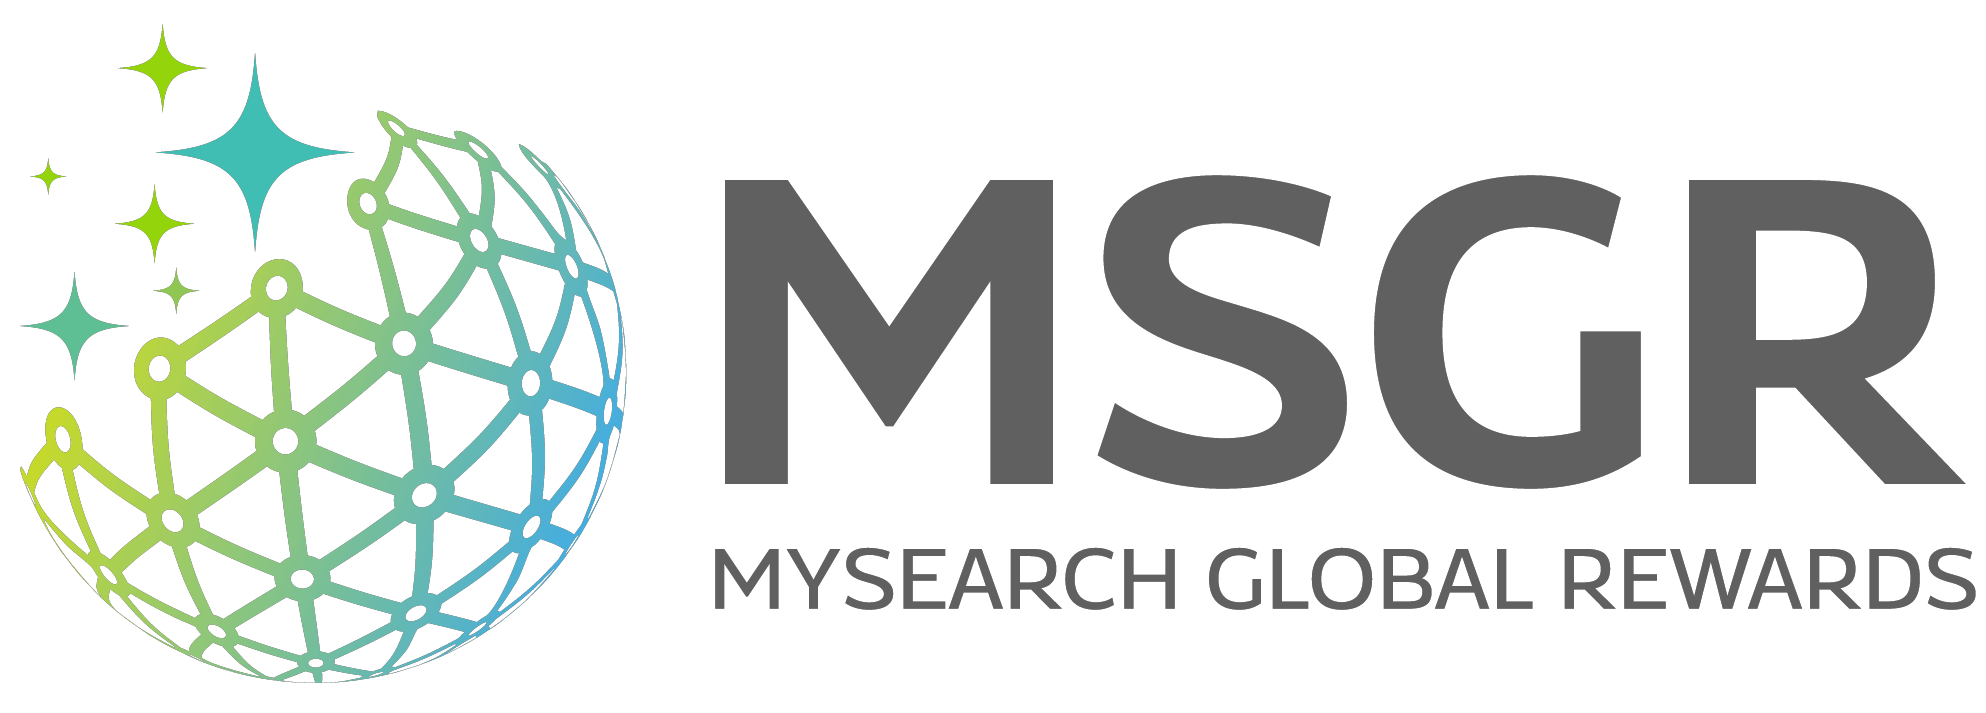 Mysearch Global Rewards